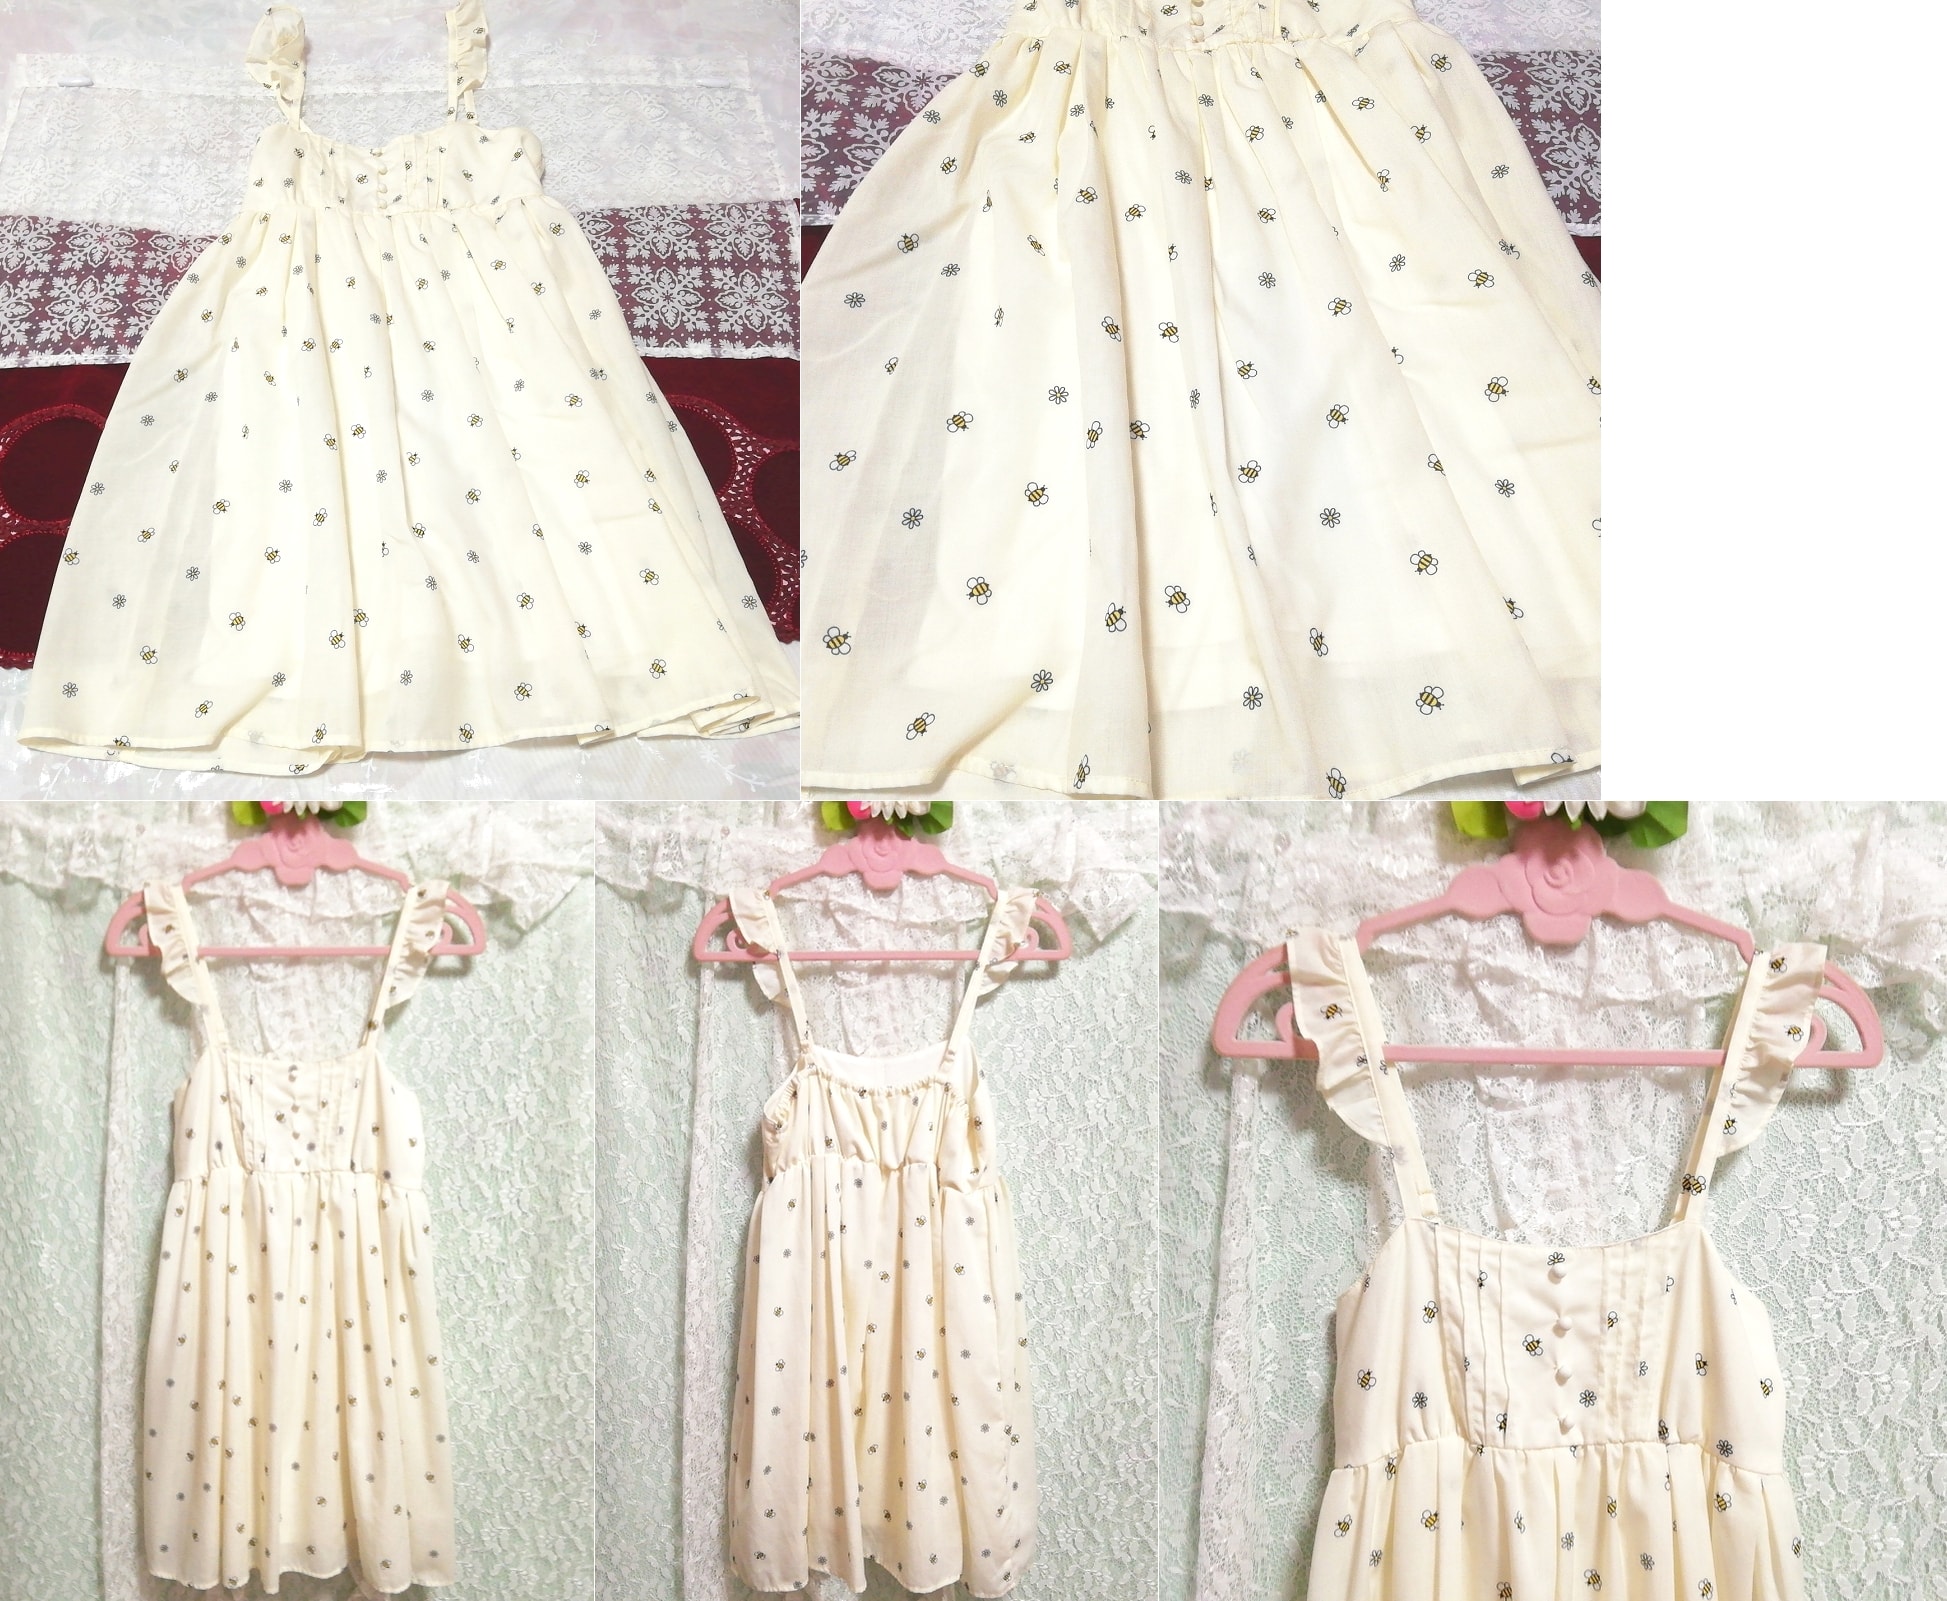 흰색 꿀벌 패턴 프린트 쉬폰 네글리제 나이트가운 캐미솔 베이비돌 드레스, 패션, 숙녀 패션, 캐미솔